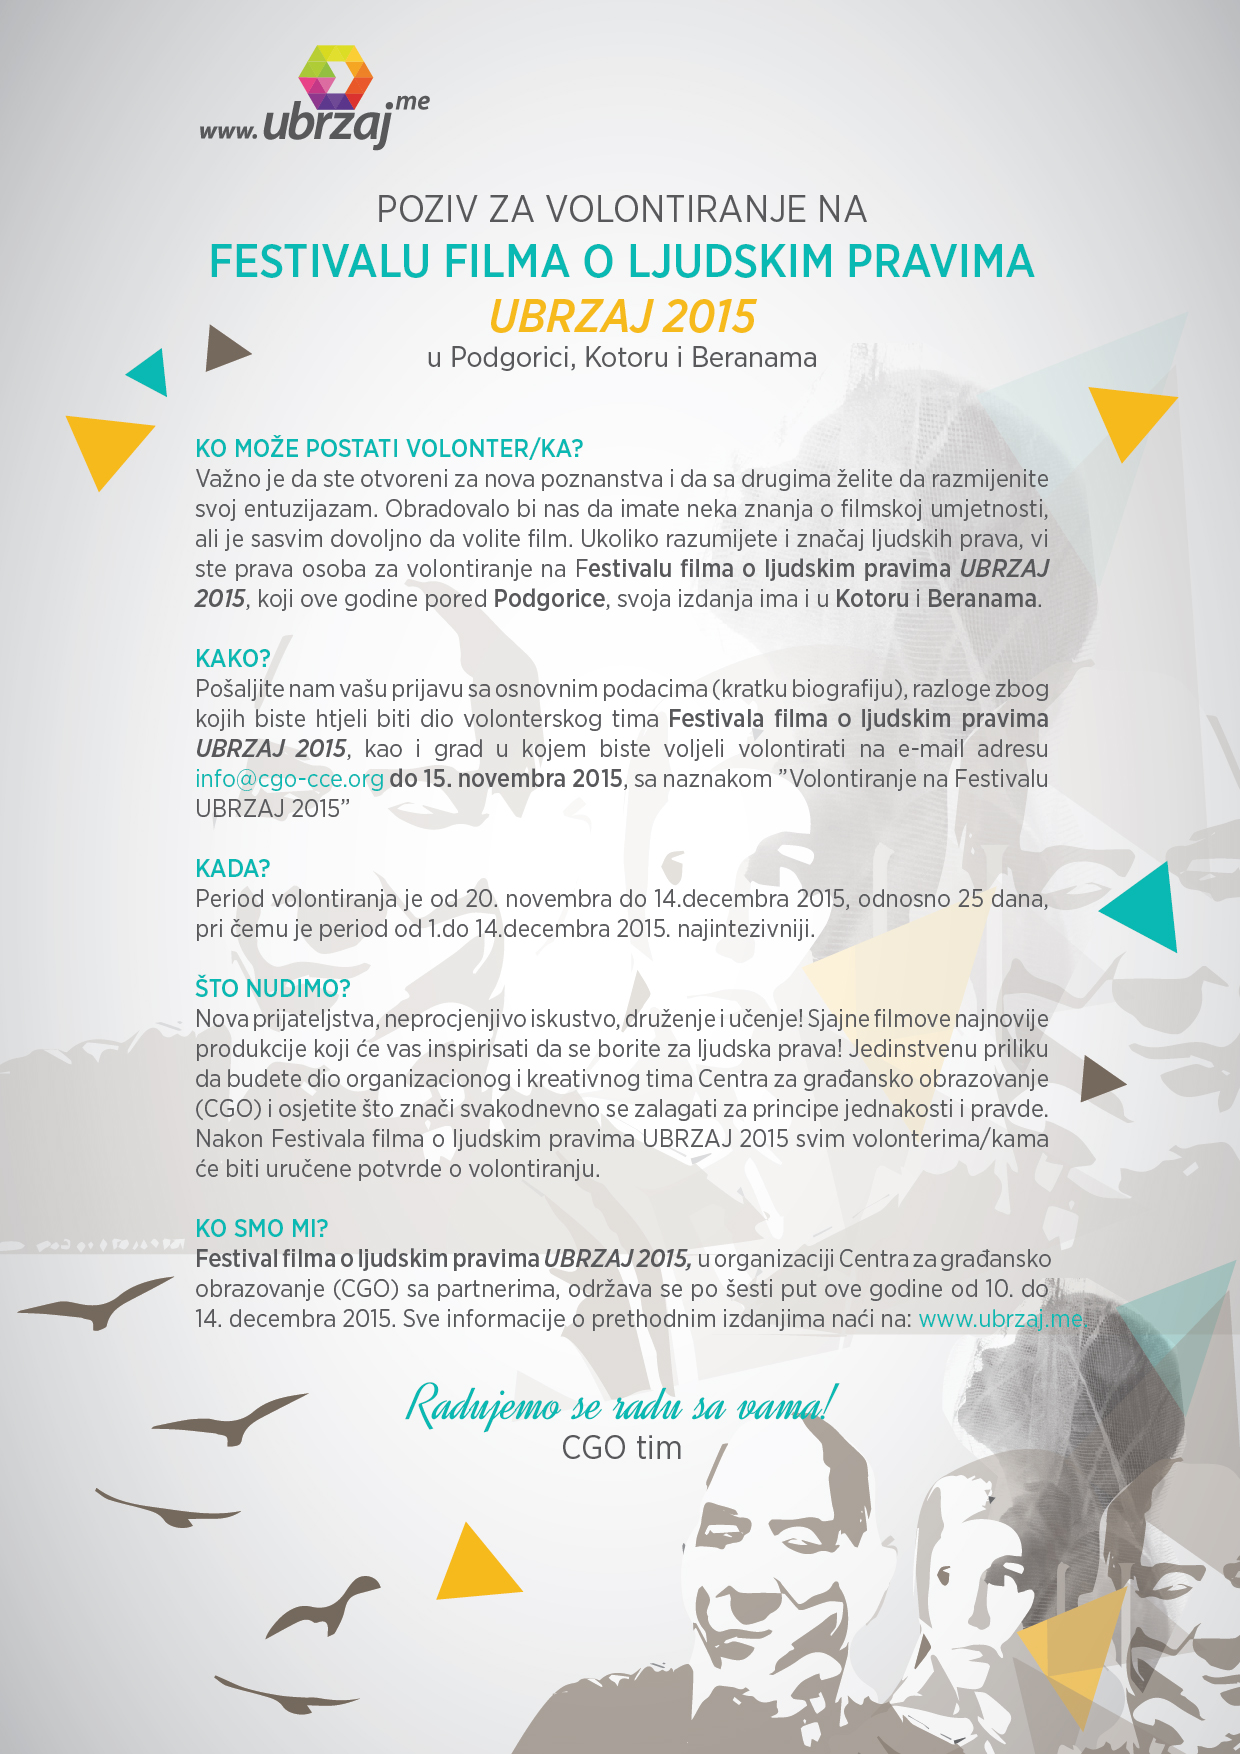 Poziv za volontiranje na Festivalu filma o ljudskim pravima - Ubrzaj 2015